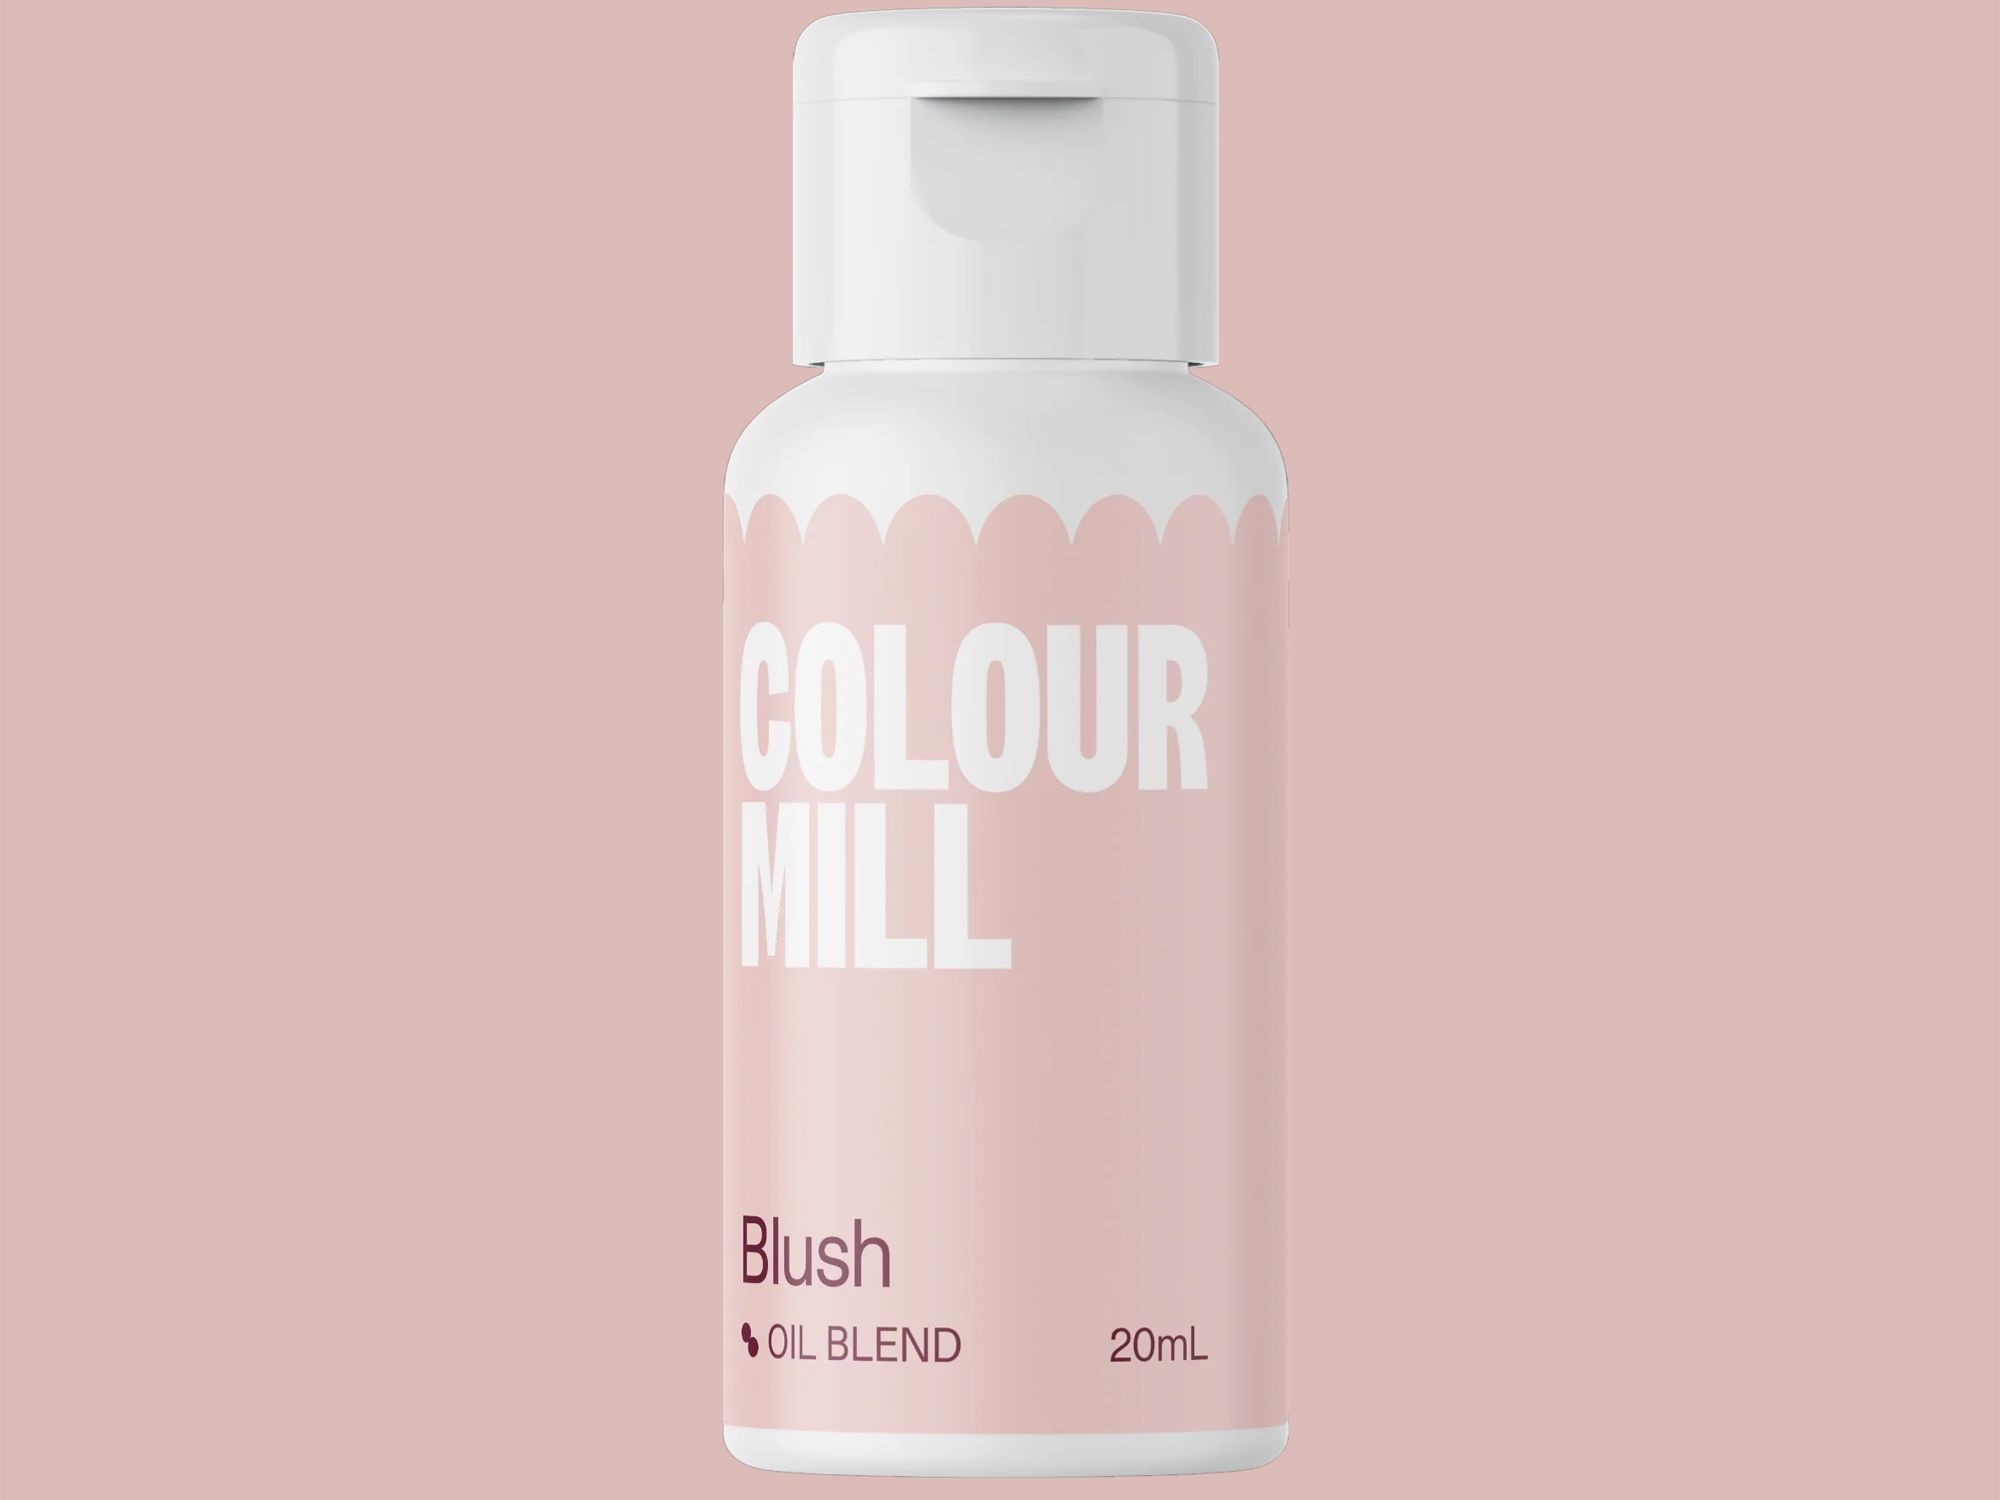 Colour Mill Blush (Oil Blend) 20ml